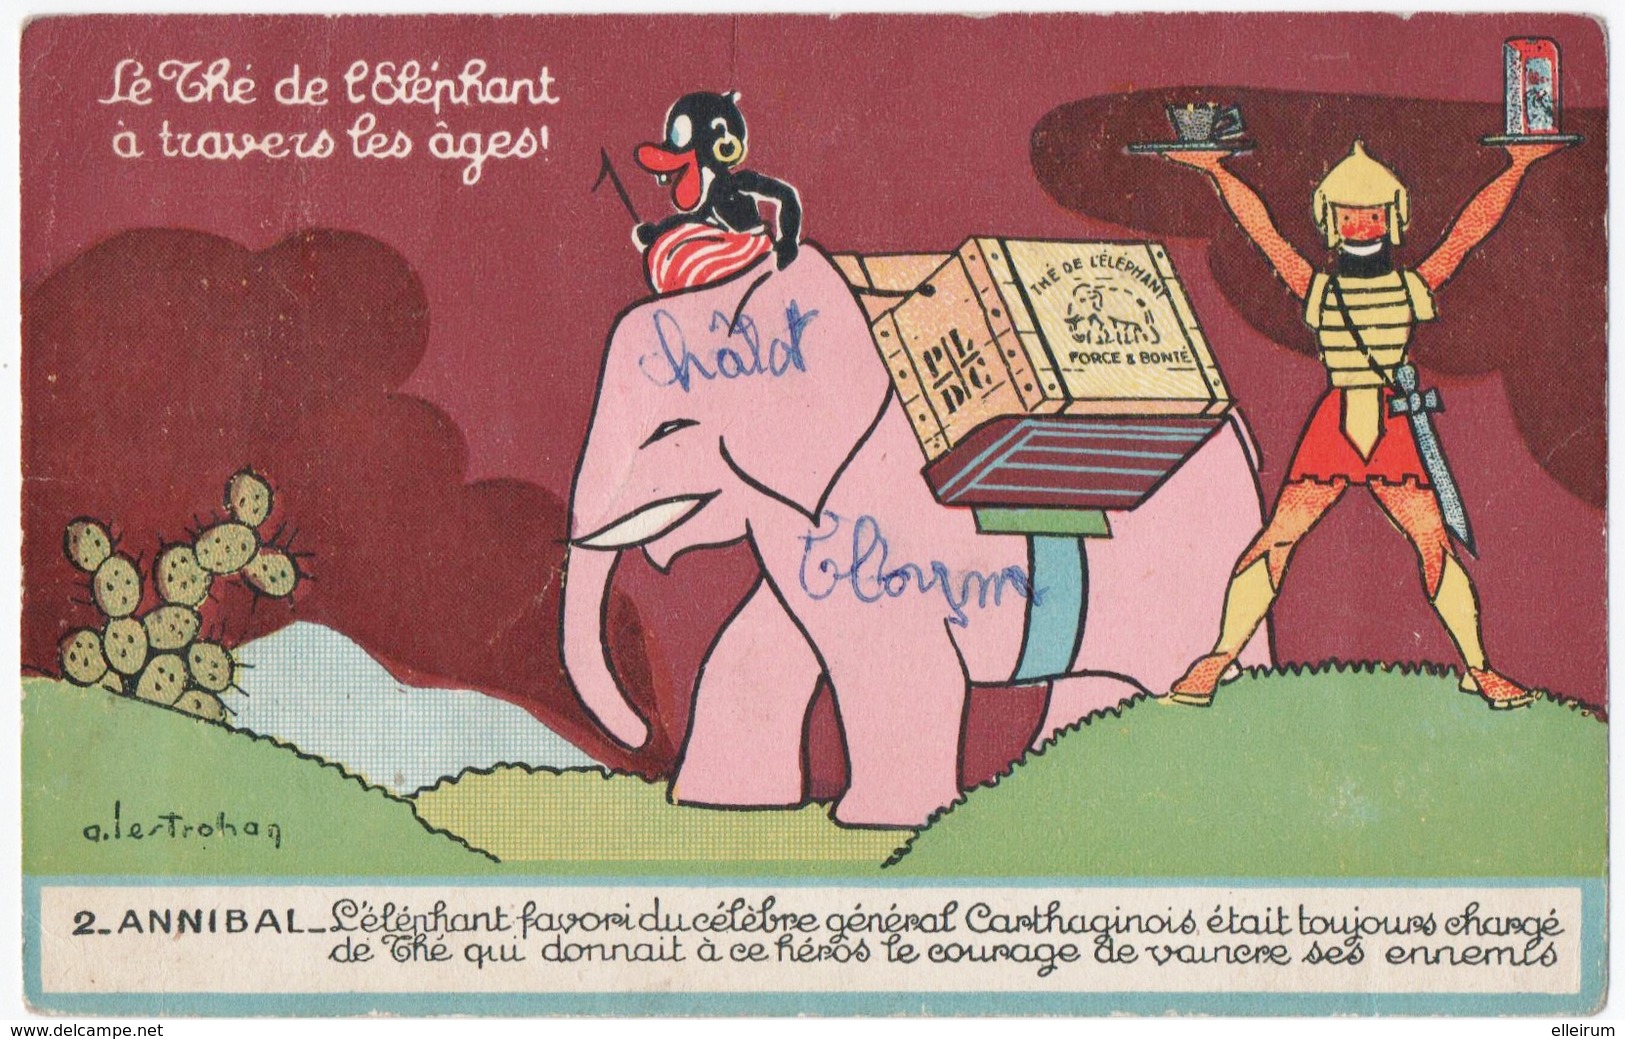 PUBLICITE. LE THE L'ELEPHANT à TRAVERS Les AGES. ANNIBAL. 1958. - Pubblicitari